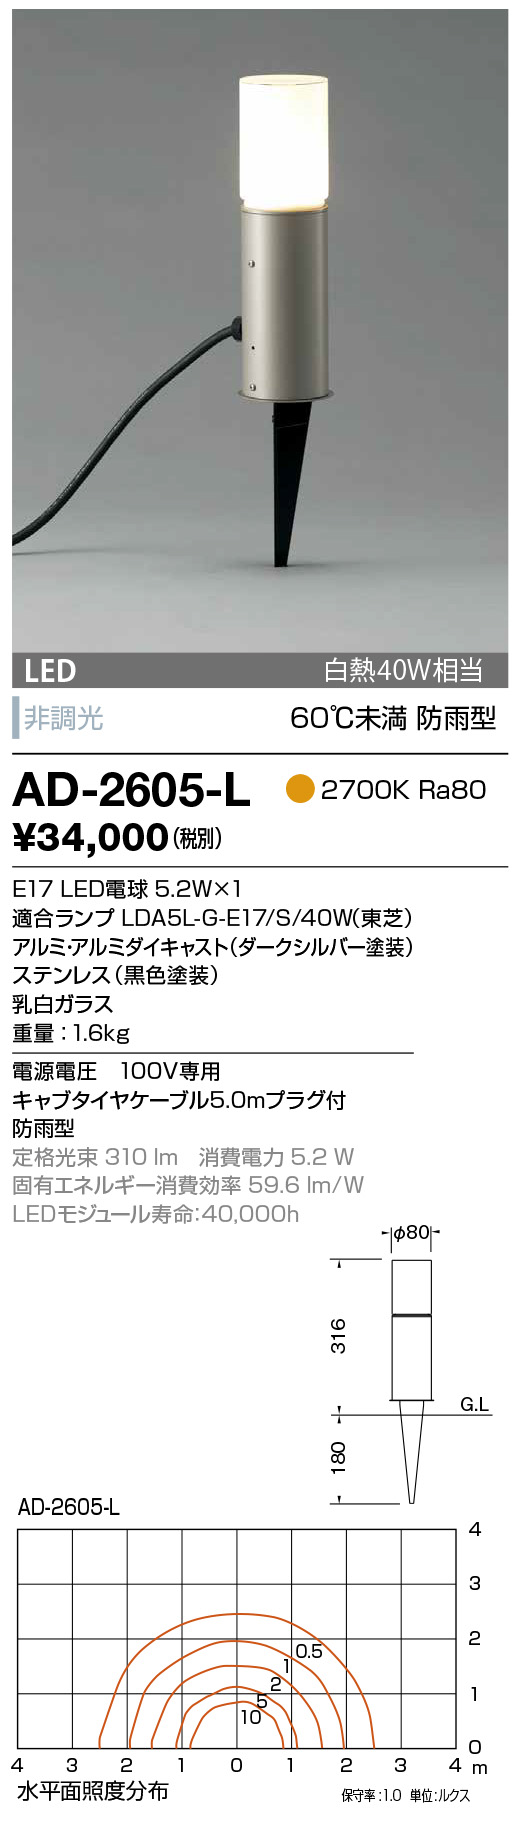 AD-2605-L(山田照明) 商品詳細 ～ 照明器具・換気扇他、電設資材販売の ...